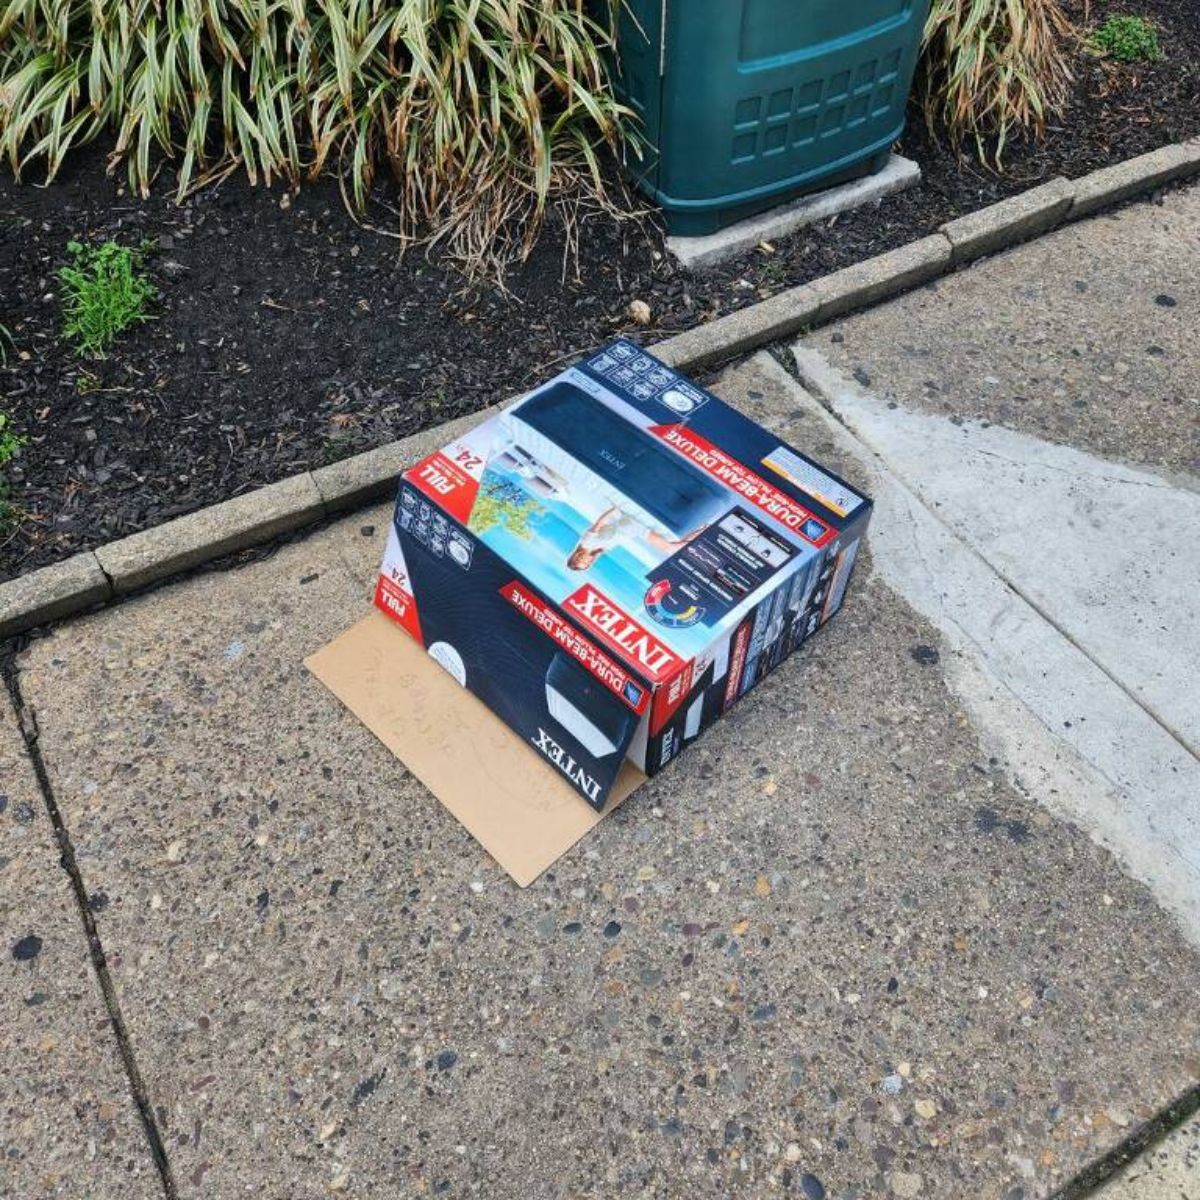 cardboard box on the sidewalk